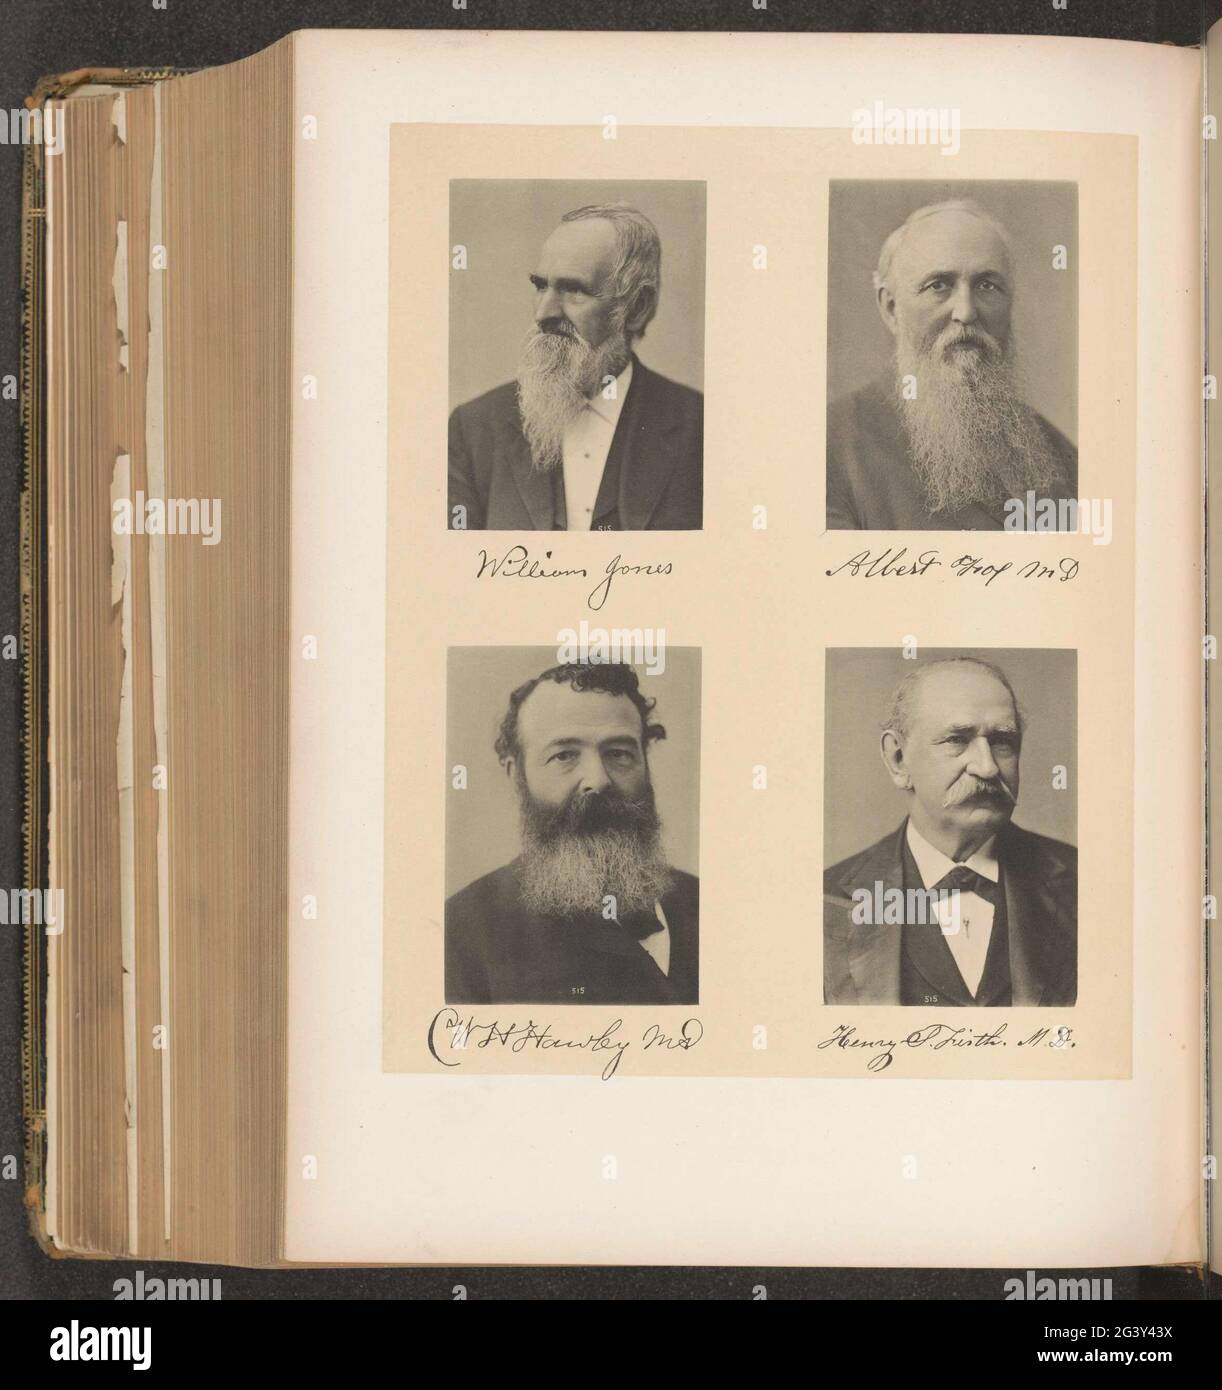 Portraits de quatre membres de la société médicale de l'État de New York. En haut à gauche William Jones, en haut à droite Albert Fox, en bas à gauche William H. Hawley, en bas à droite Henry S. Firth. Banque D'Images